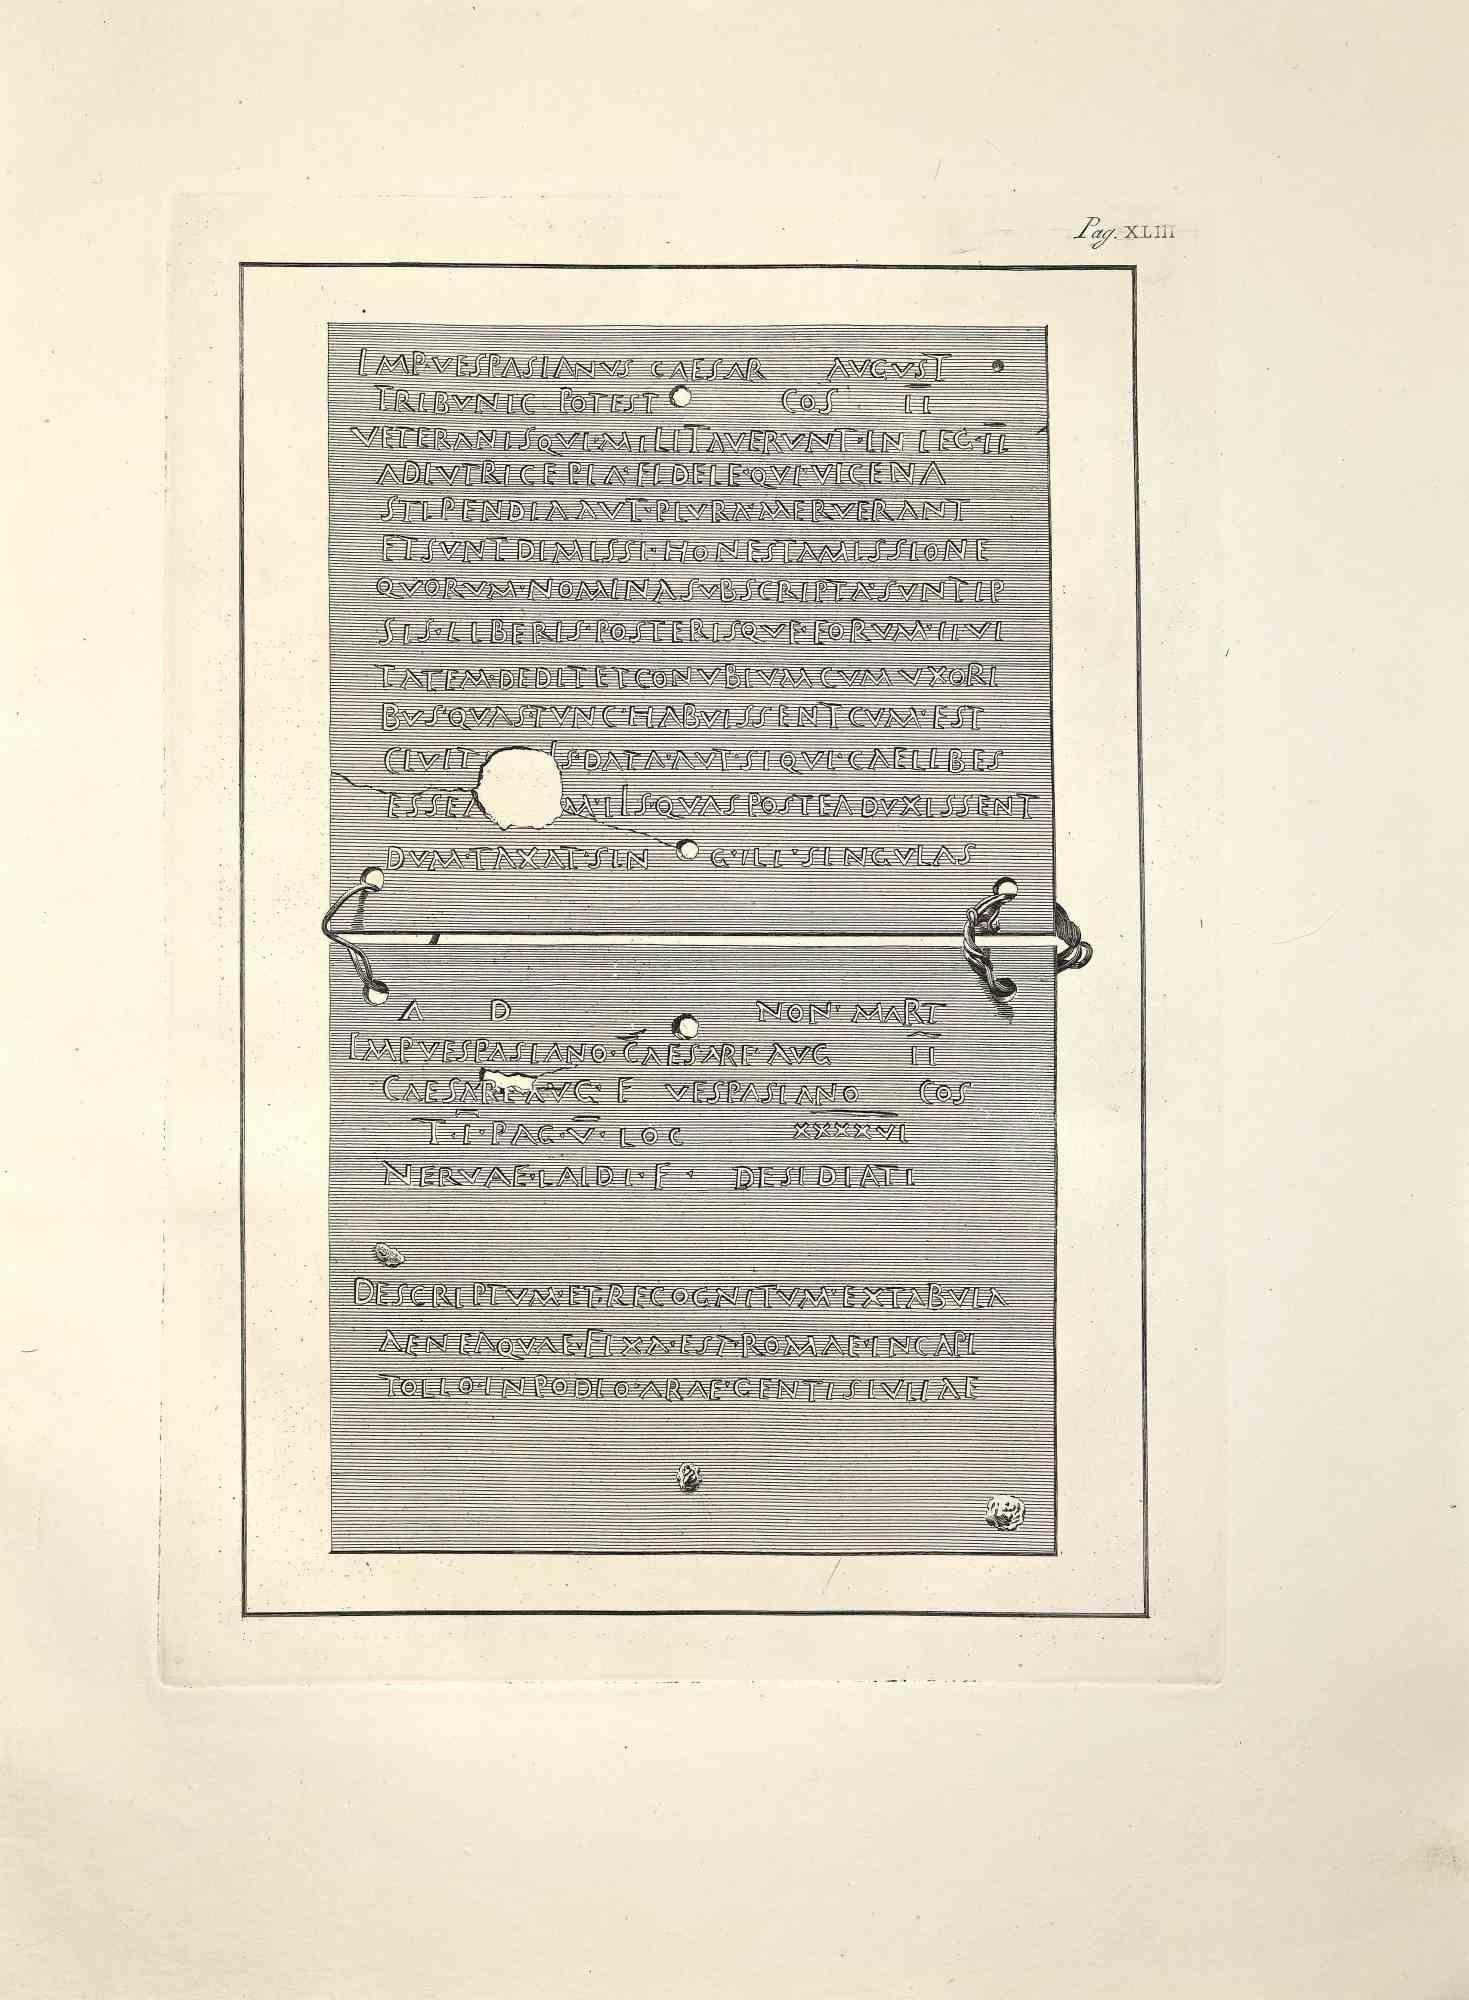 Anciennes inscriptions romaines d'Herculanum, de la série "Antiquités d'Herculanum exposées", est une gravure originale réalisée par Filippo de Grado à la fin du 18ème siècle.

Bonnes conditions.

La gravure appartient à la suite d'estampes